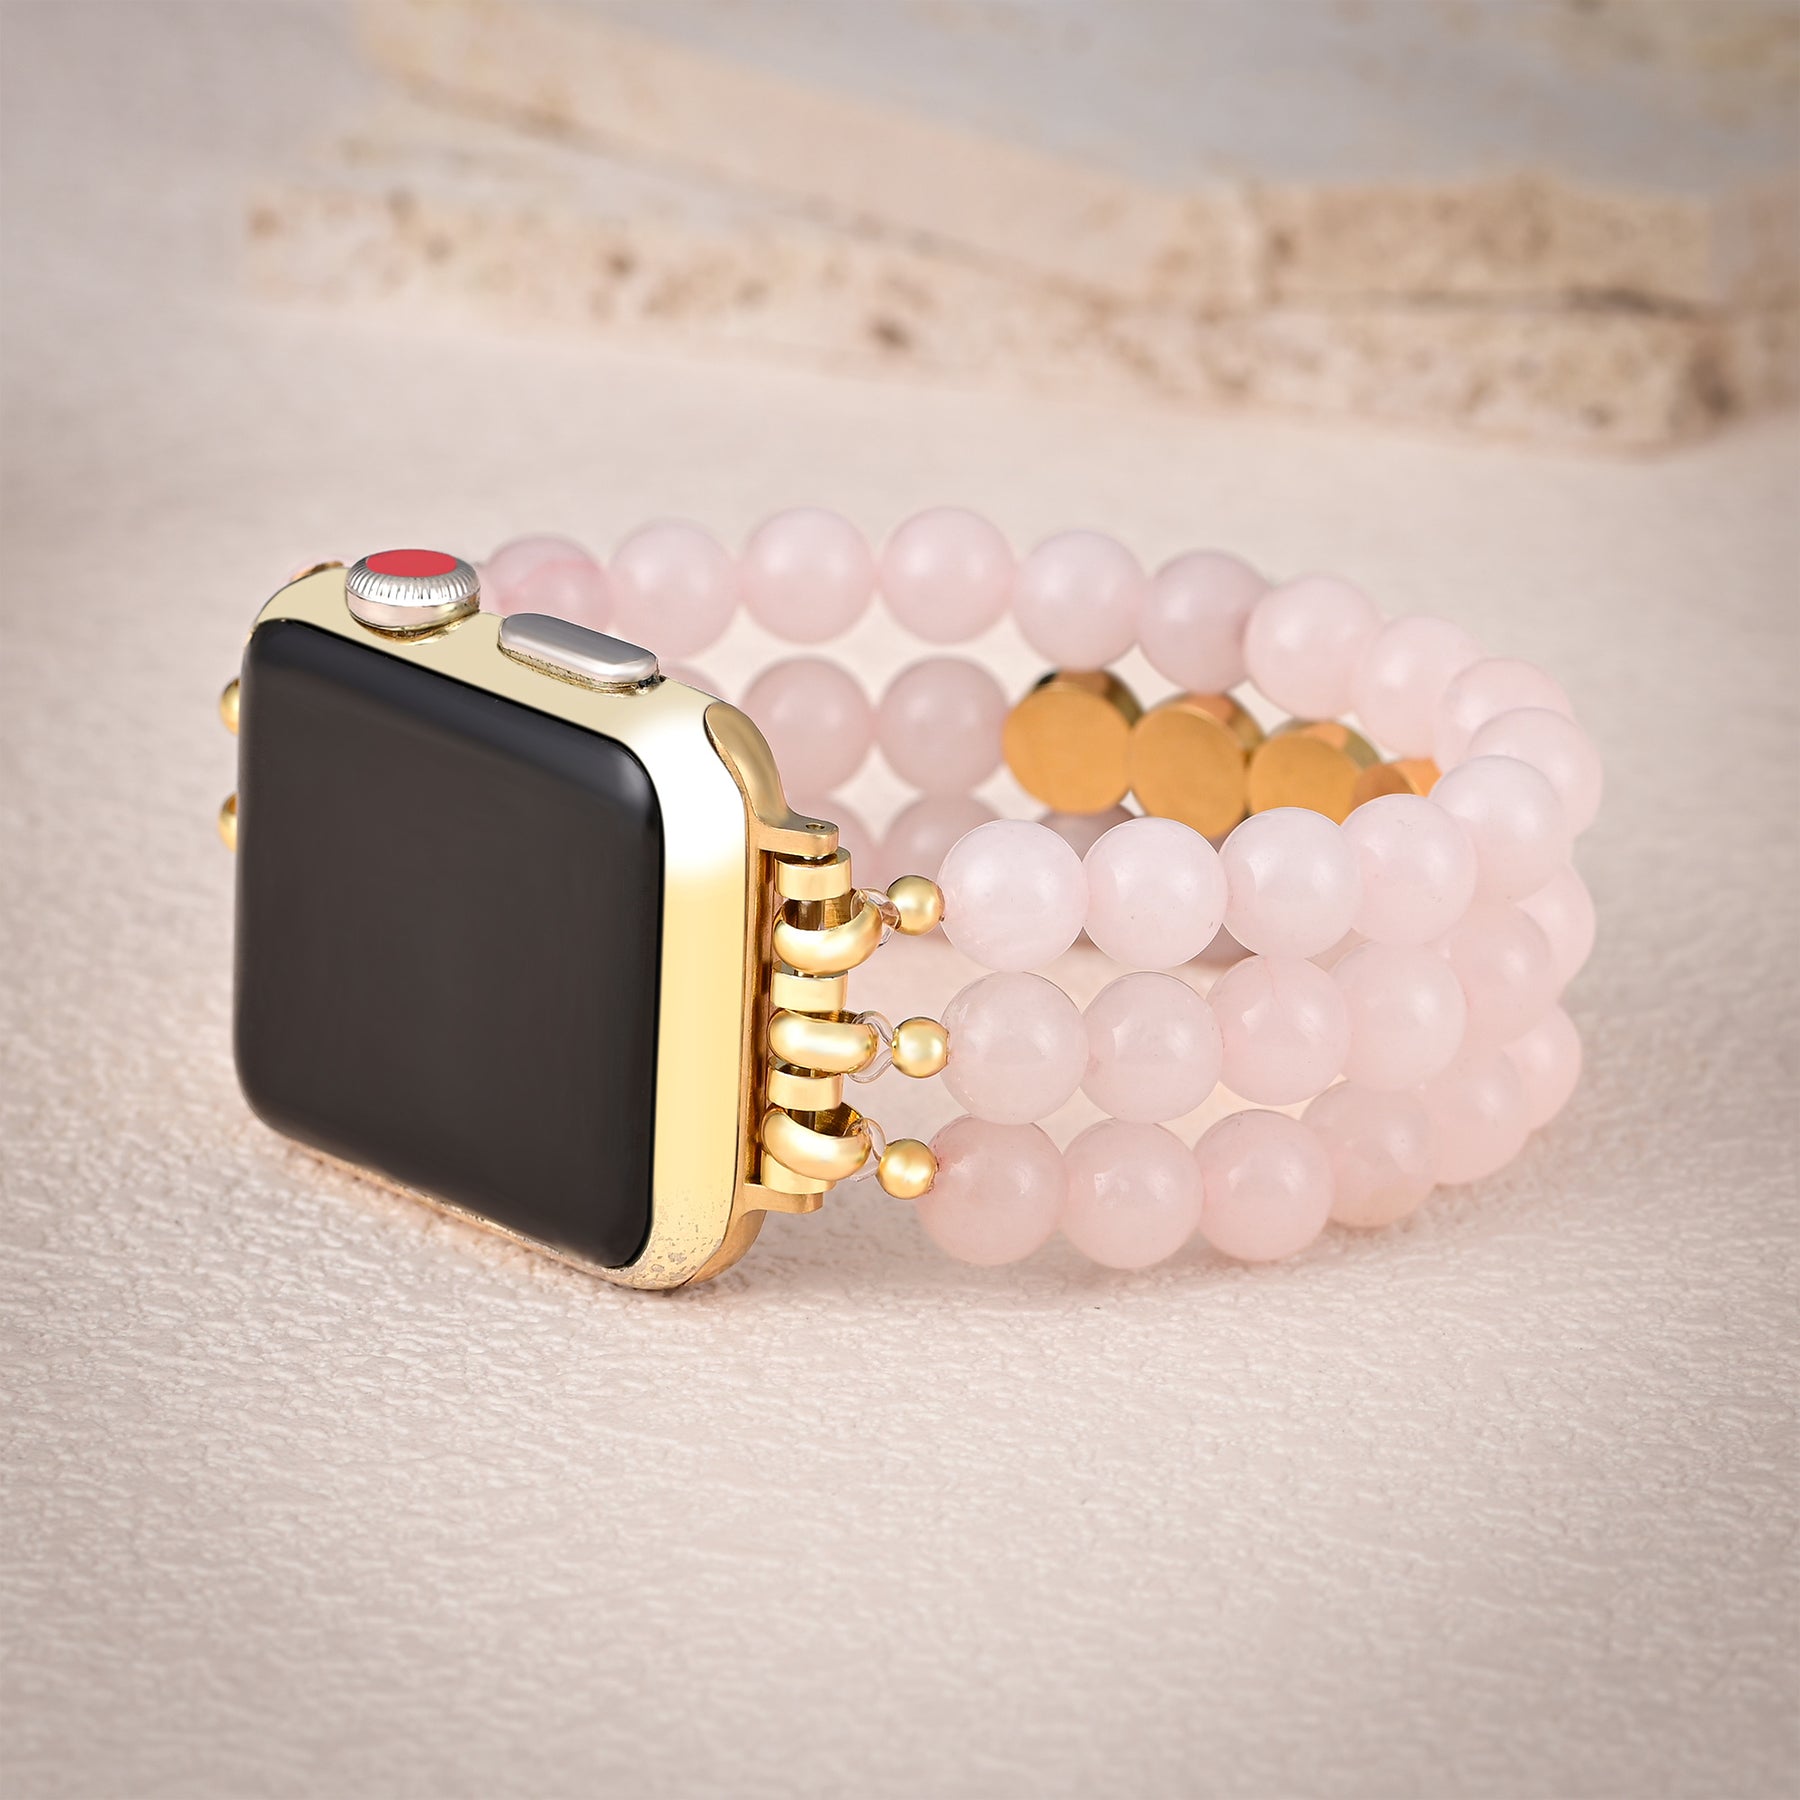 Pulseira para Apple Watch com inspiração amorosa em quartzo rosa